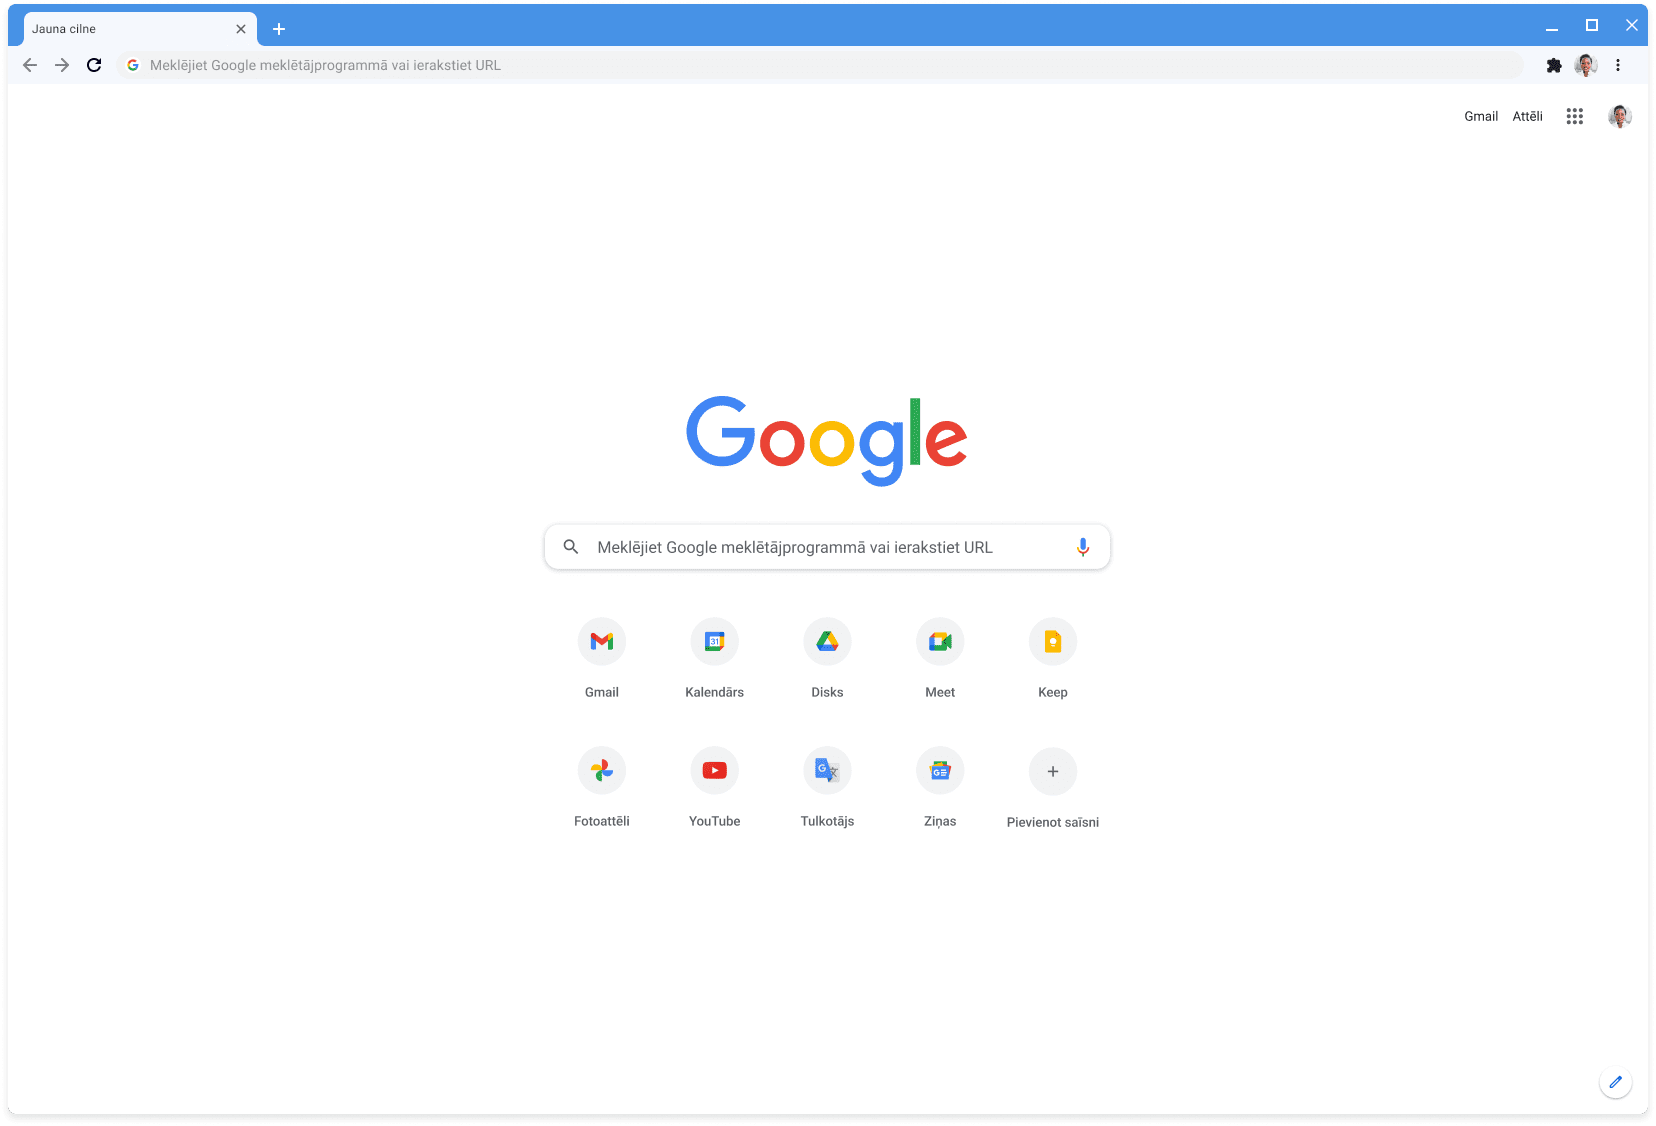 Pārlūka Chrome logā (ar klasisko motīvu) tiek rādīta vietne Google.com.